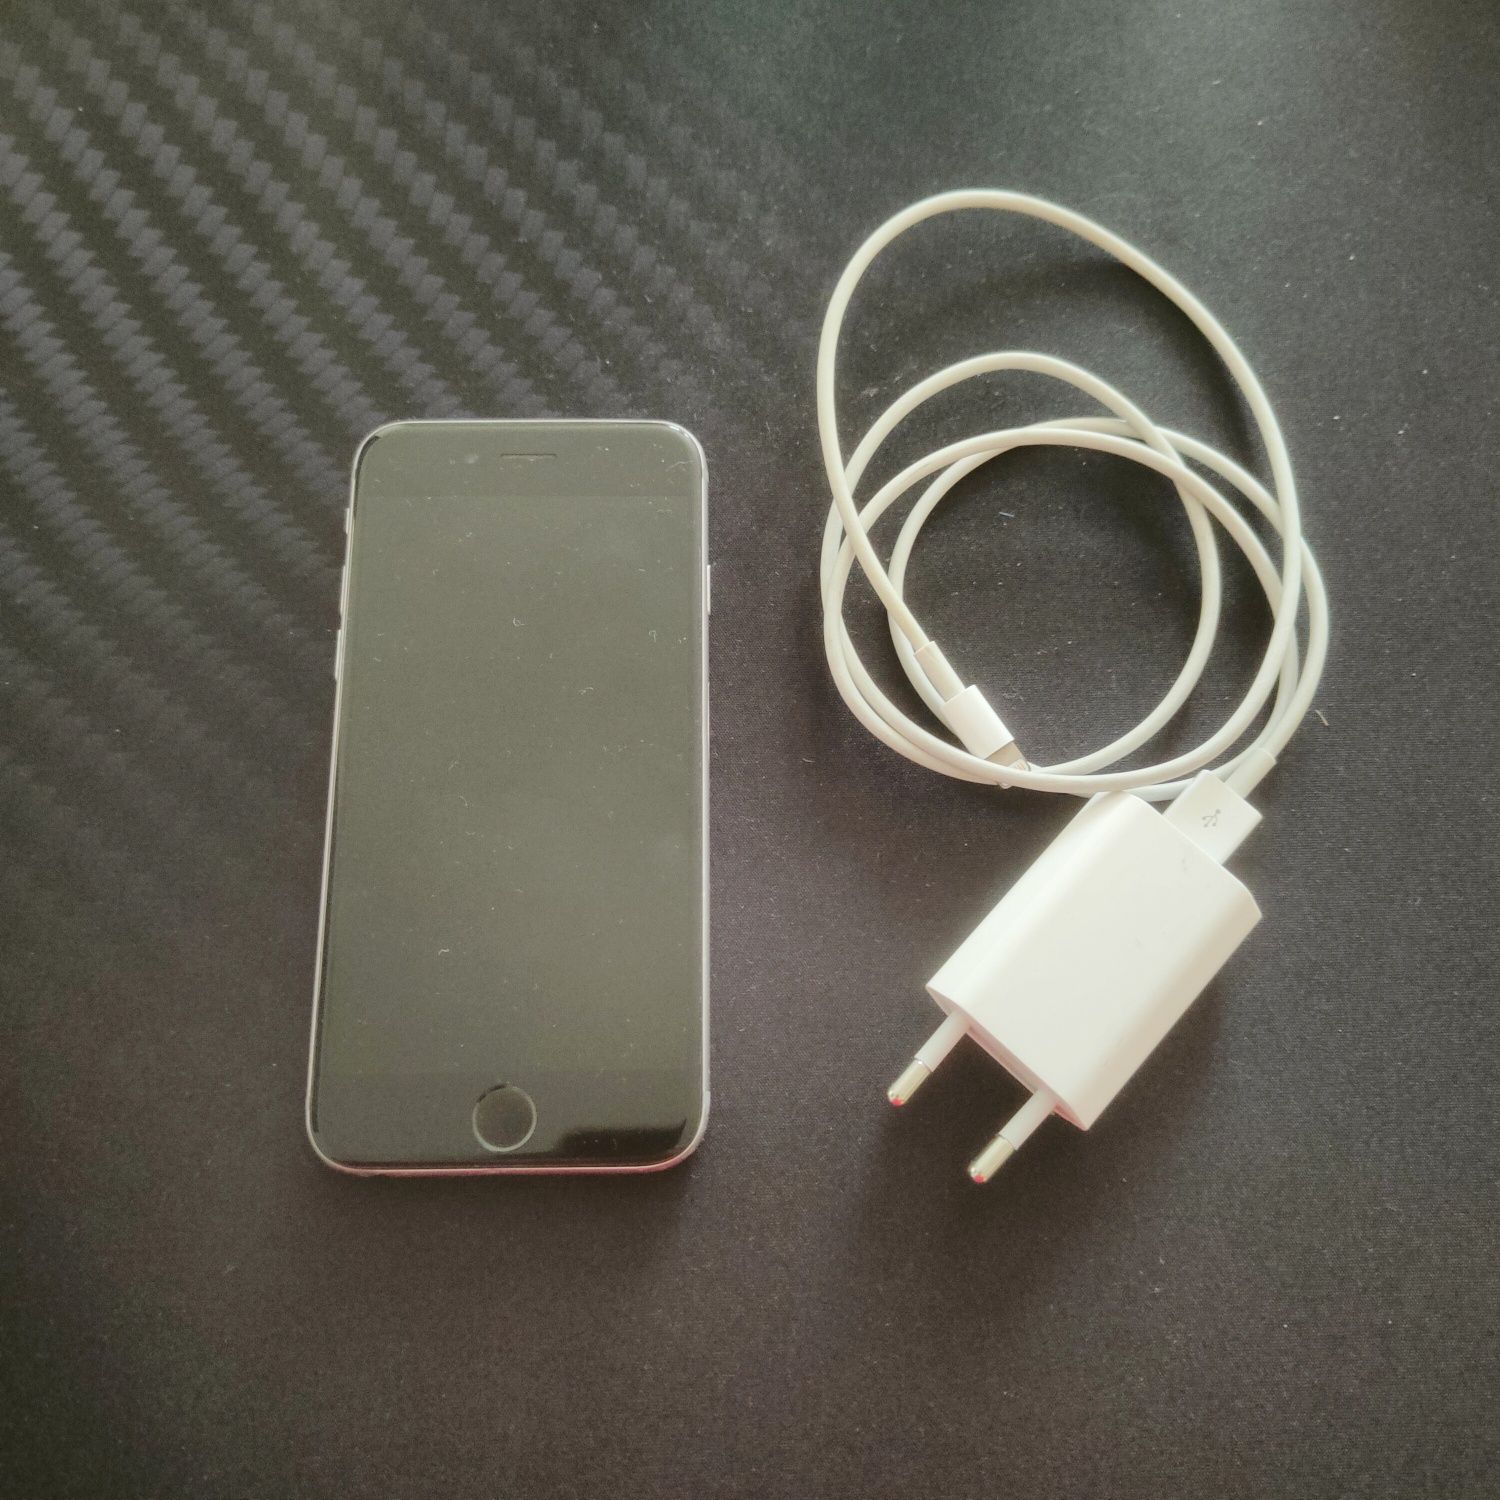 Telefon Iphone 6 srebrny z ładowarką